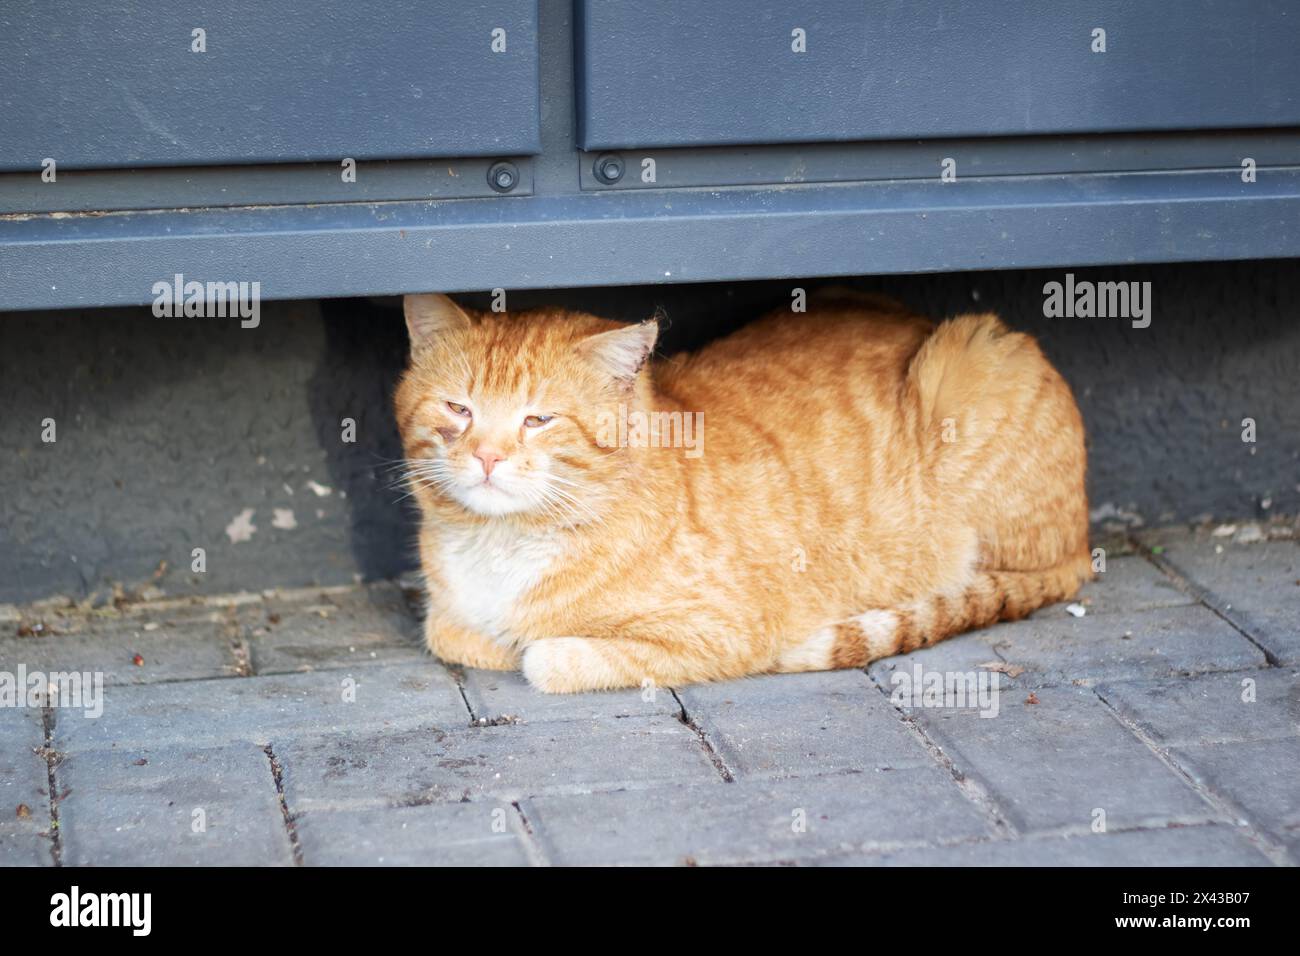 Eine kleine bis mittelgroße Katze liegt auf dem Boden unter einer Tür, Kopf und Bein sind sichtbar. Die hellen Augen der Felidae reflektieren das Licht von der Straße Stockfoto